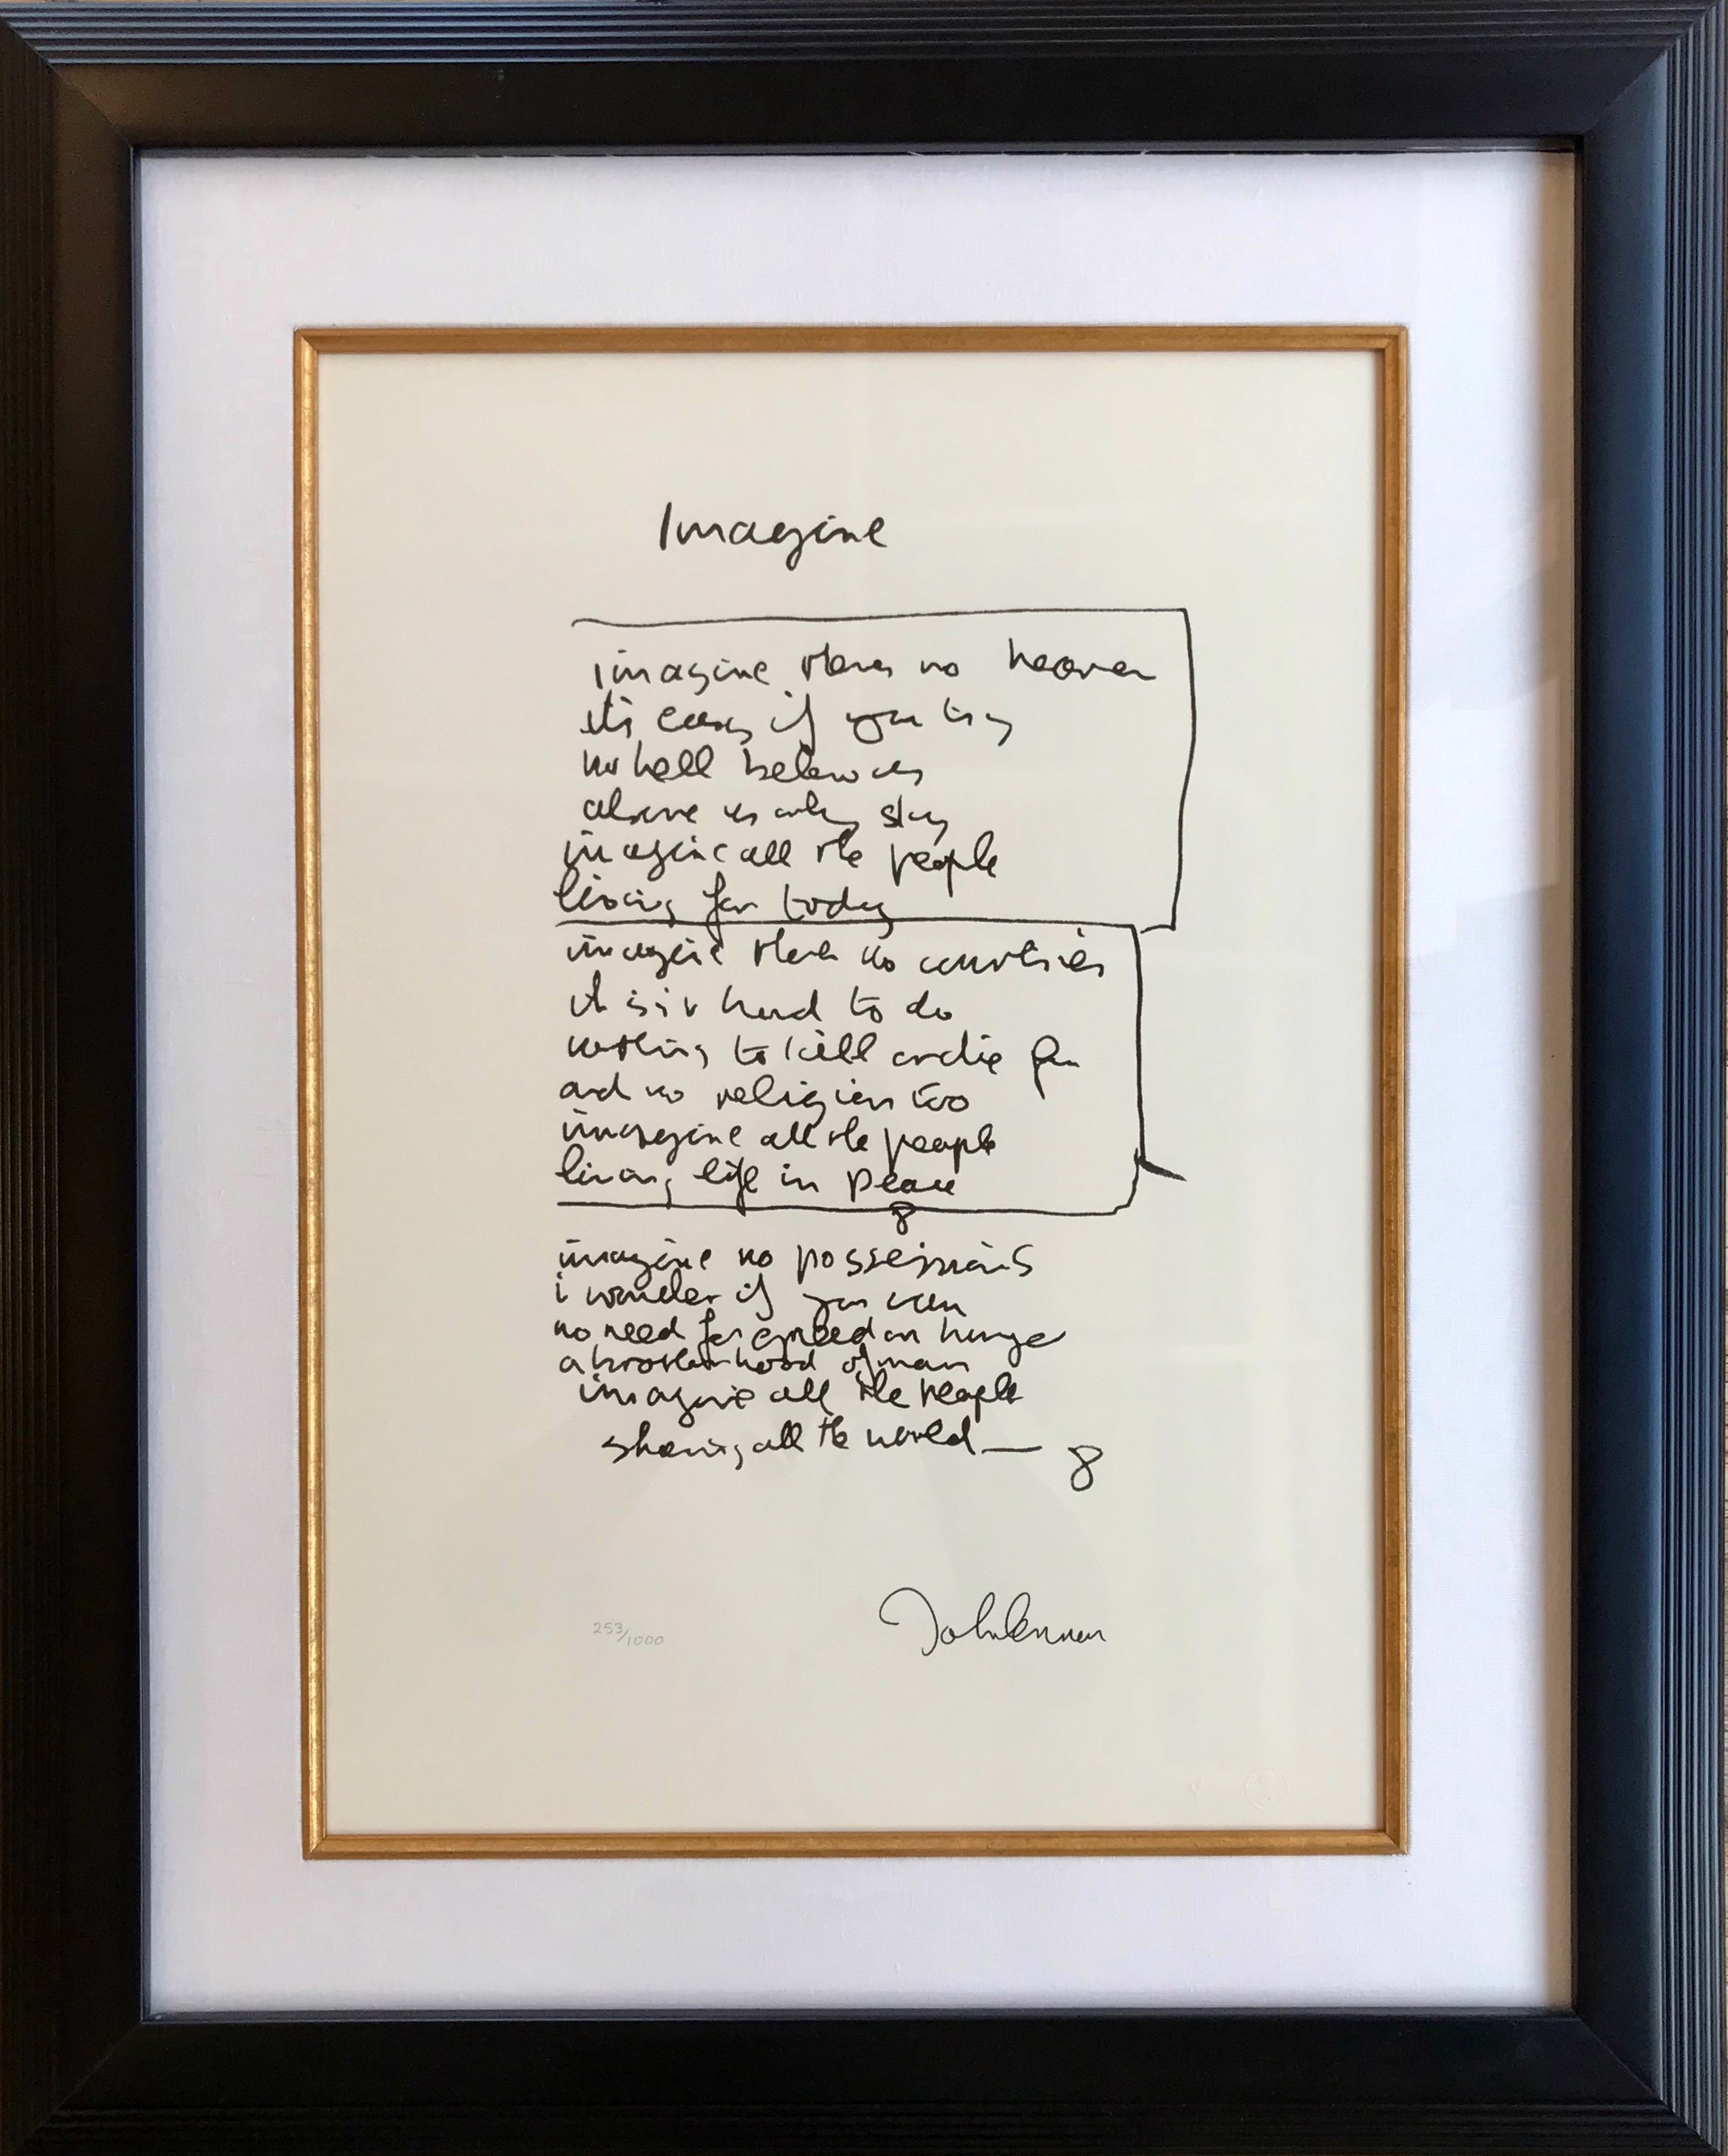 Imagine Framed Lyrics by John Lennon